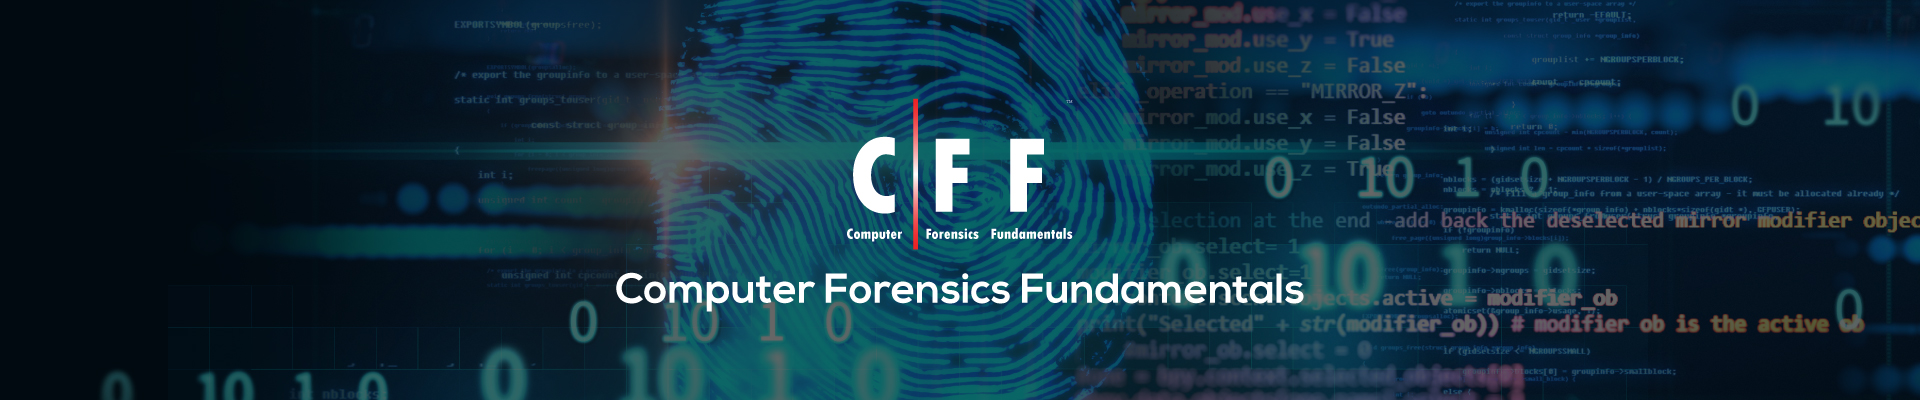 Computer Forensics Fundamentals